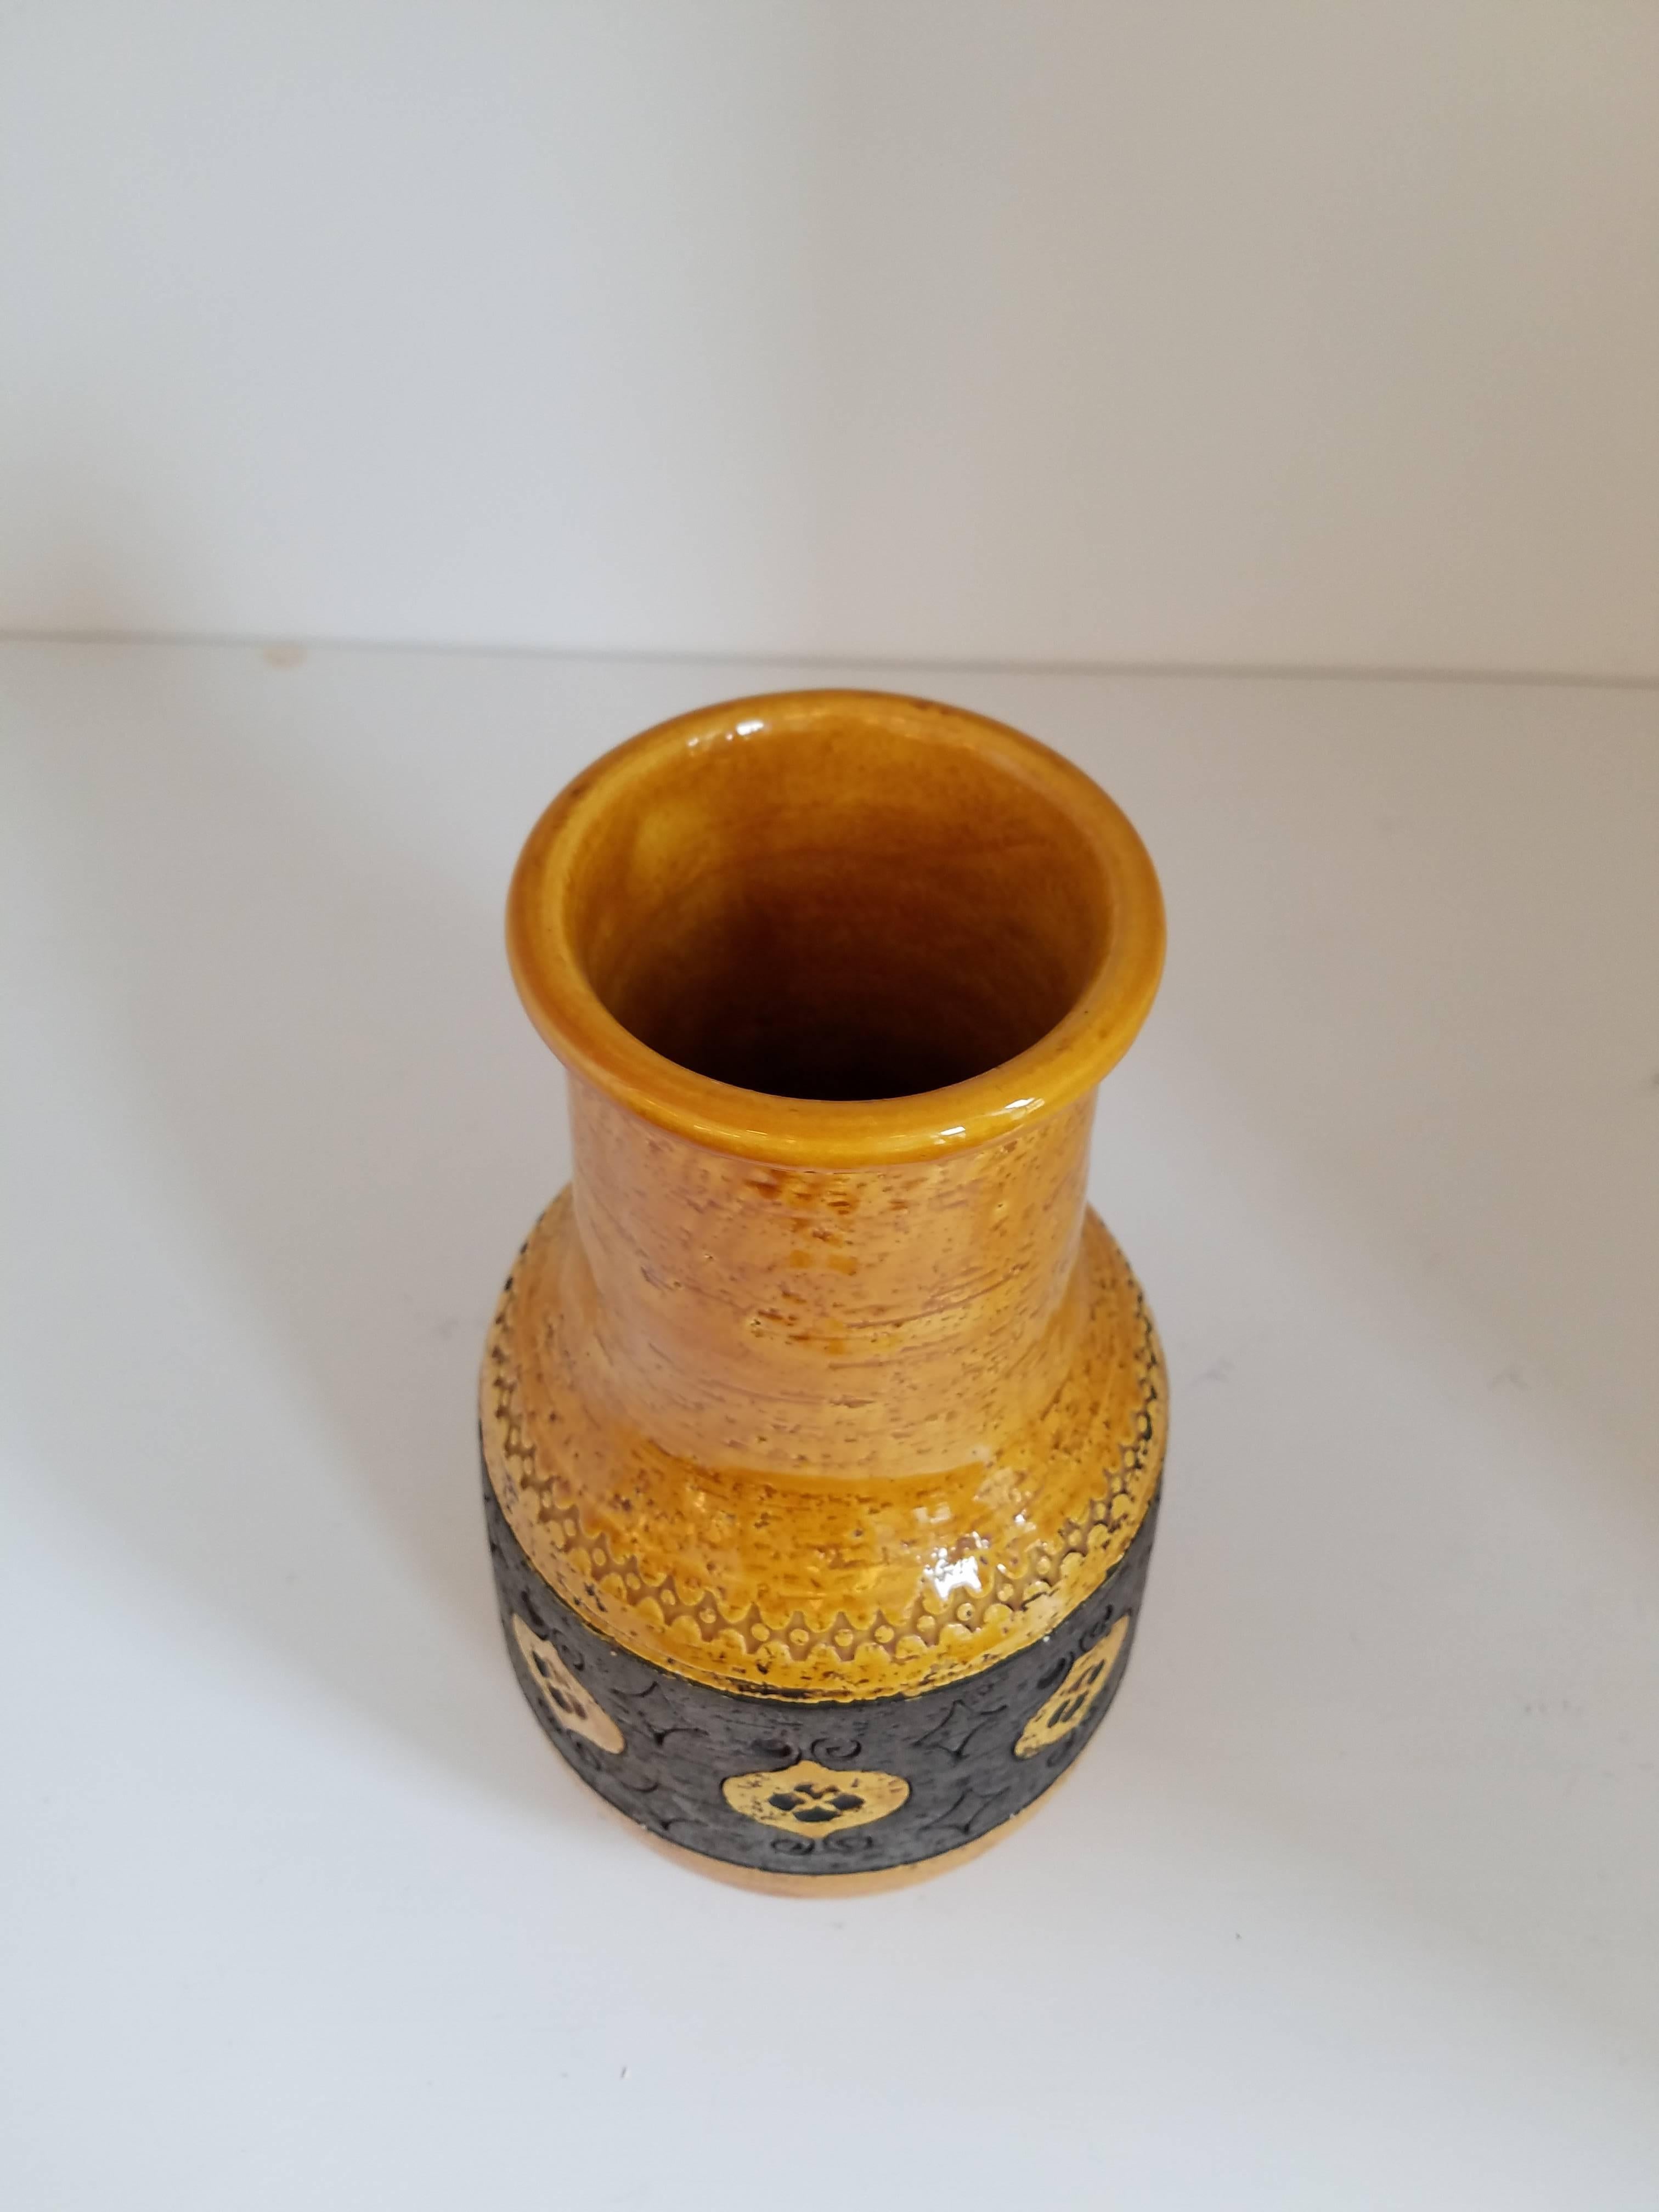 Vase en céramique italienne avec une glaçure marbrée de type siena et une bande non glacée sculptée et gravée à la main autour du centre avec des motifs géométriques. Fabriqué en Italie, vers 1960

Diamètre de la base - 5,5